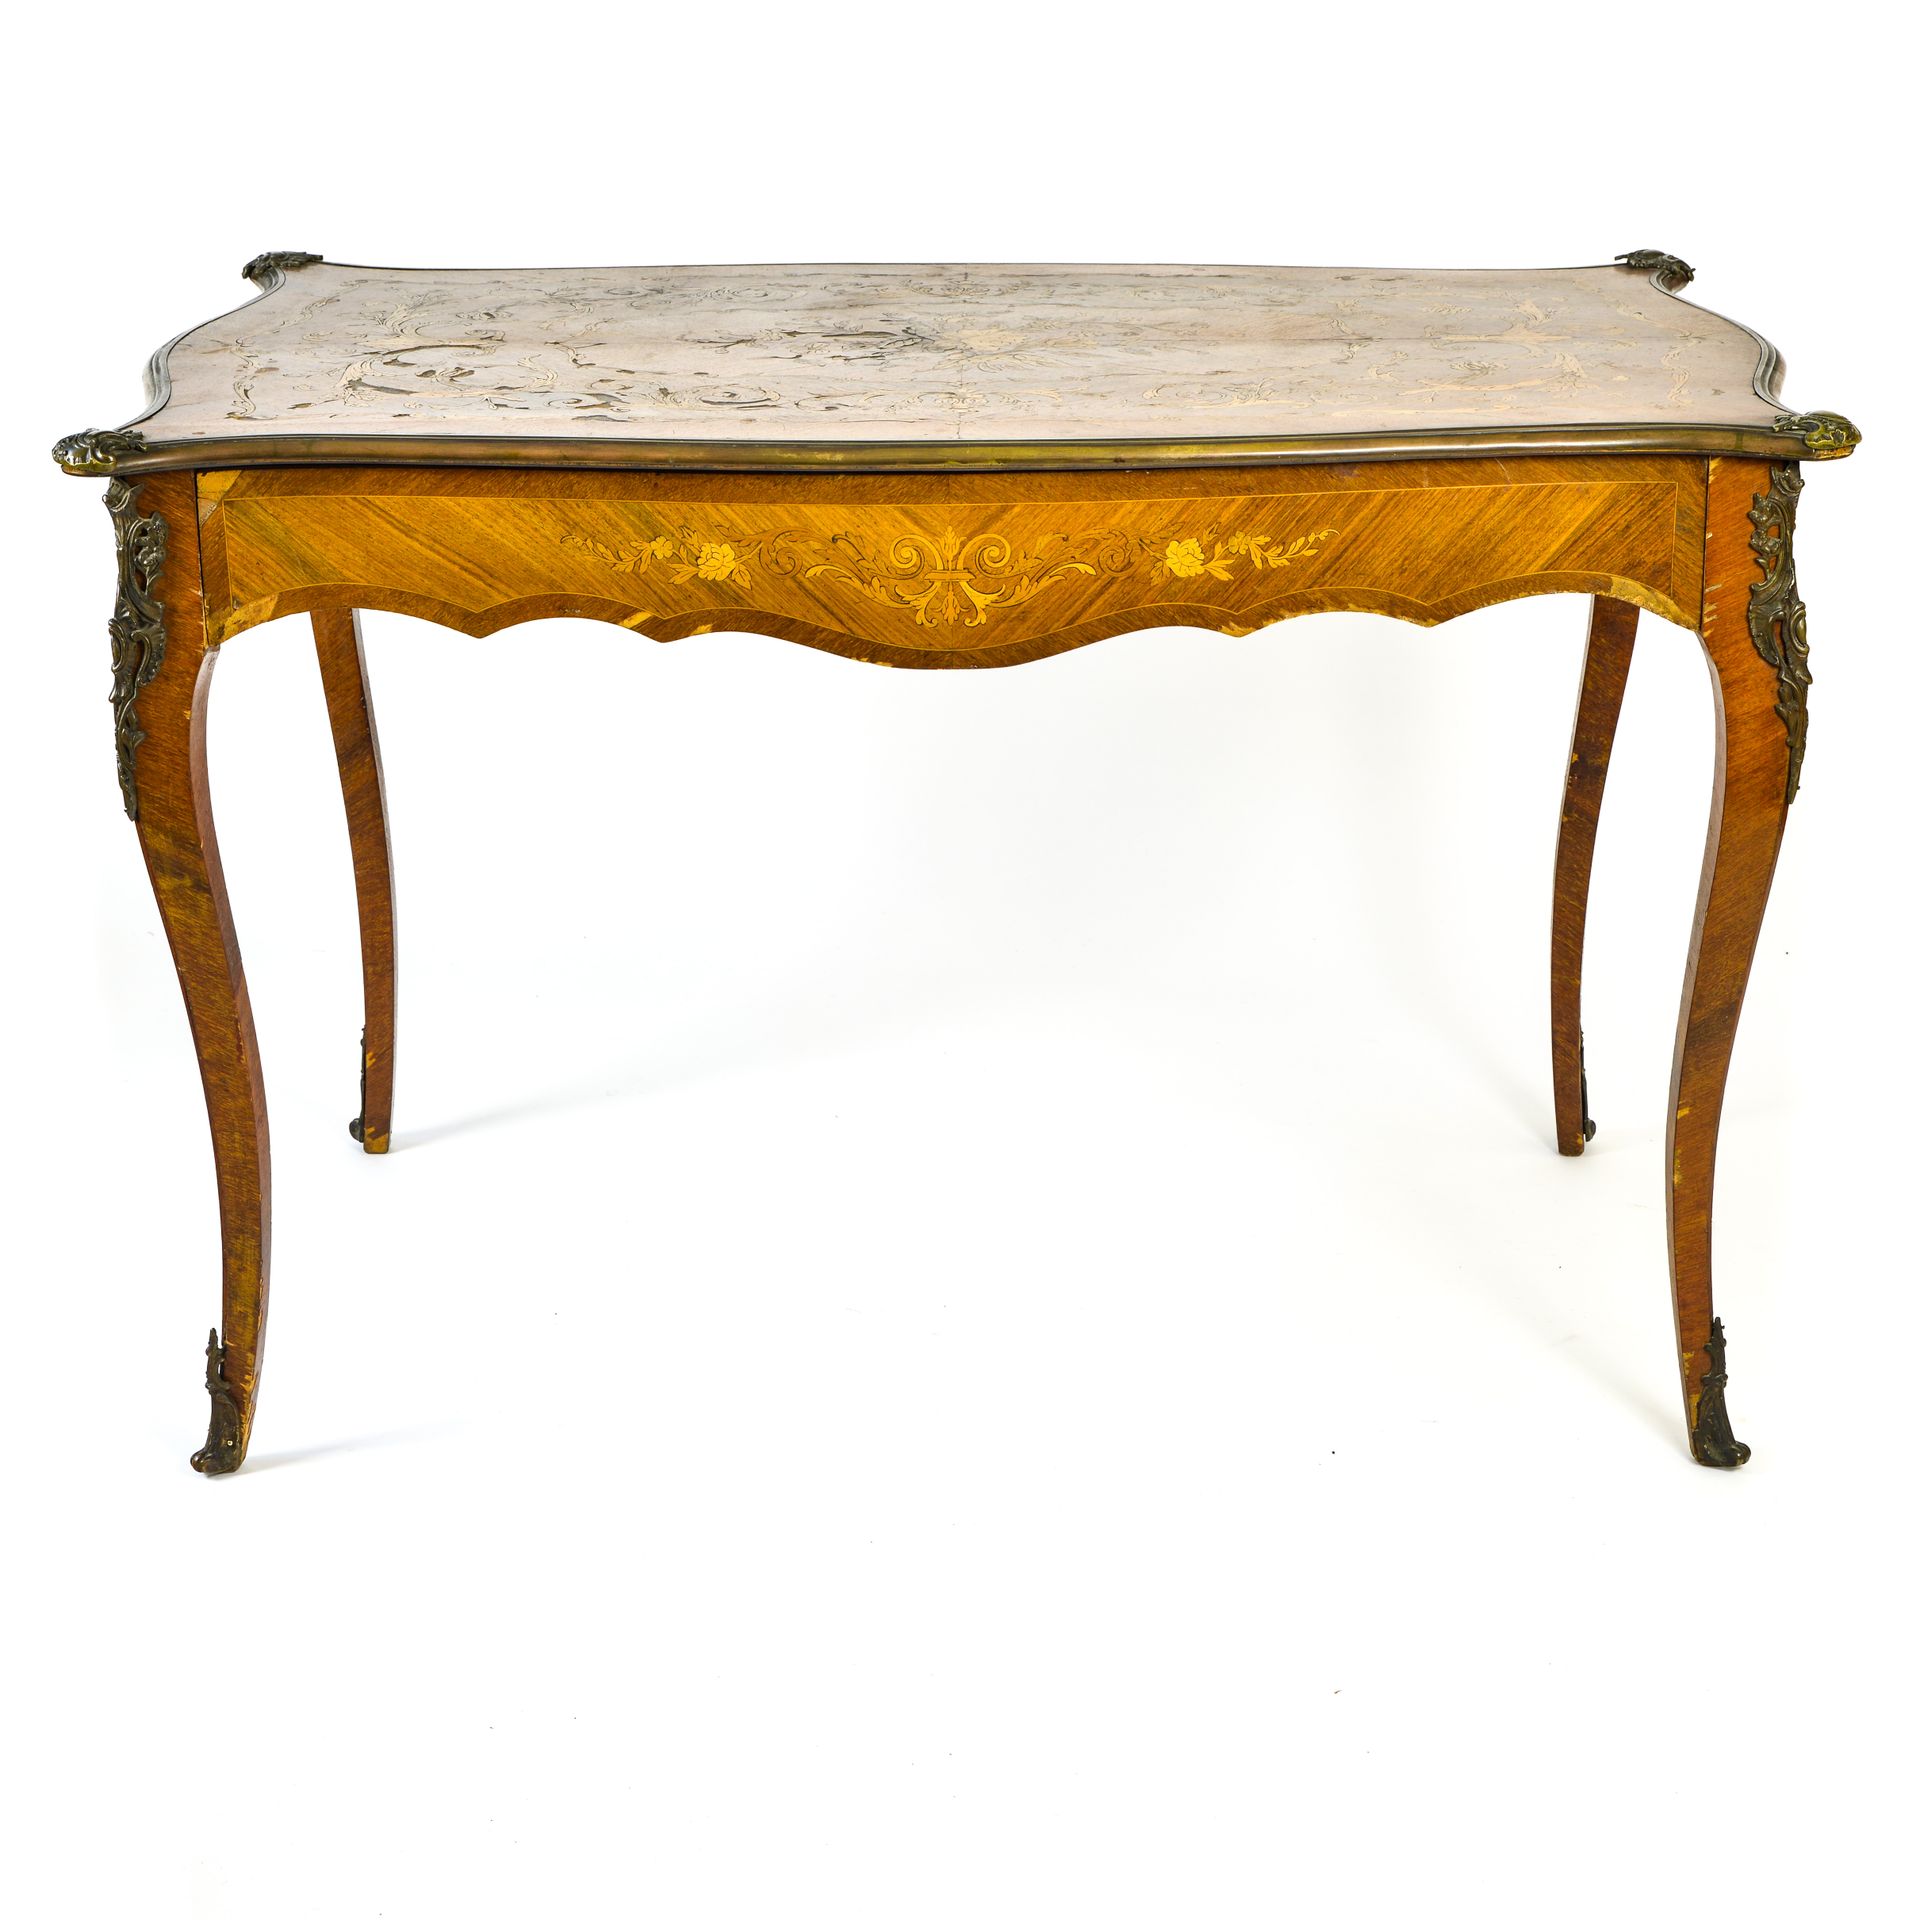 Null 路易十五风格的作品

夫人的桌子



镶嵌和饰面，丰富的青铜装饰品

有一只鞋要重新固定，单板有小缝隙 高：74厘米 宽：104厘米 深：71厘米